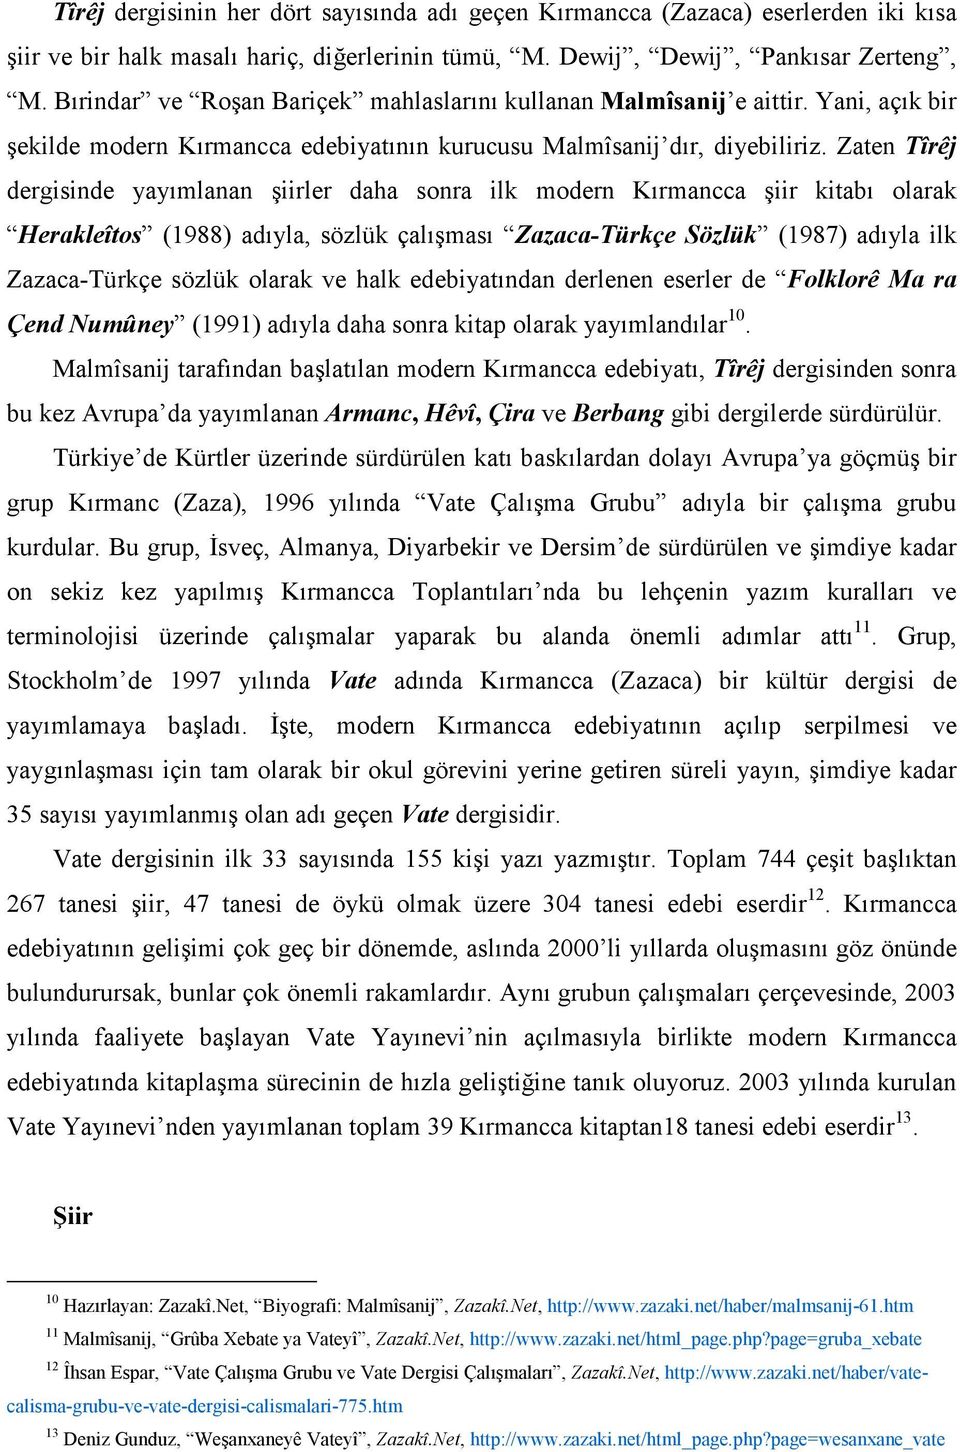 Zaten Tîrêj dergisinde yayımlanan şiirler daha sonra ilk modern Kırmancca şiir kitabı olarak Herakleîtos (1988) adıyla, sözlük çalışması Zazaca-Türkçe Sözlük (1987) adıyla ilk Zazaca-Türkçe sözlük